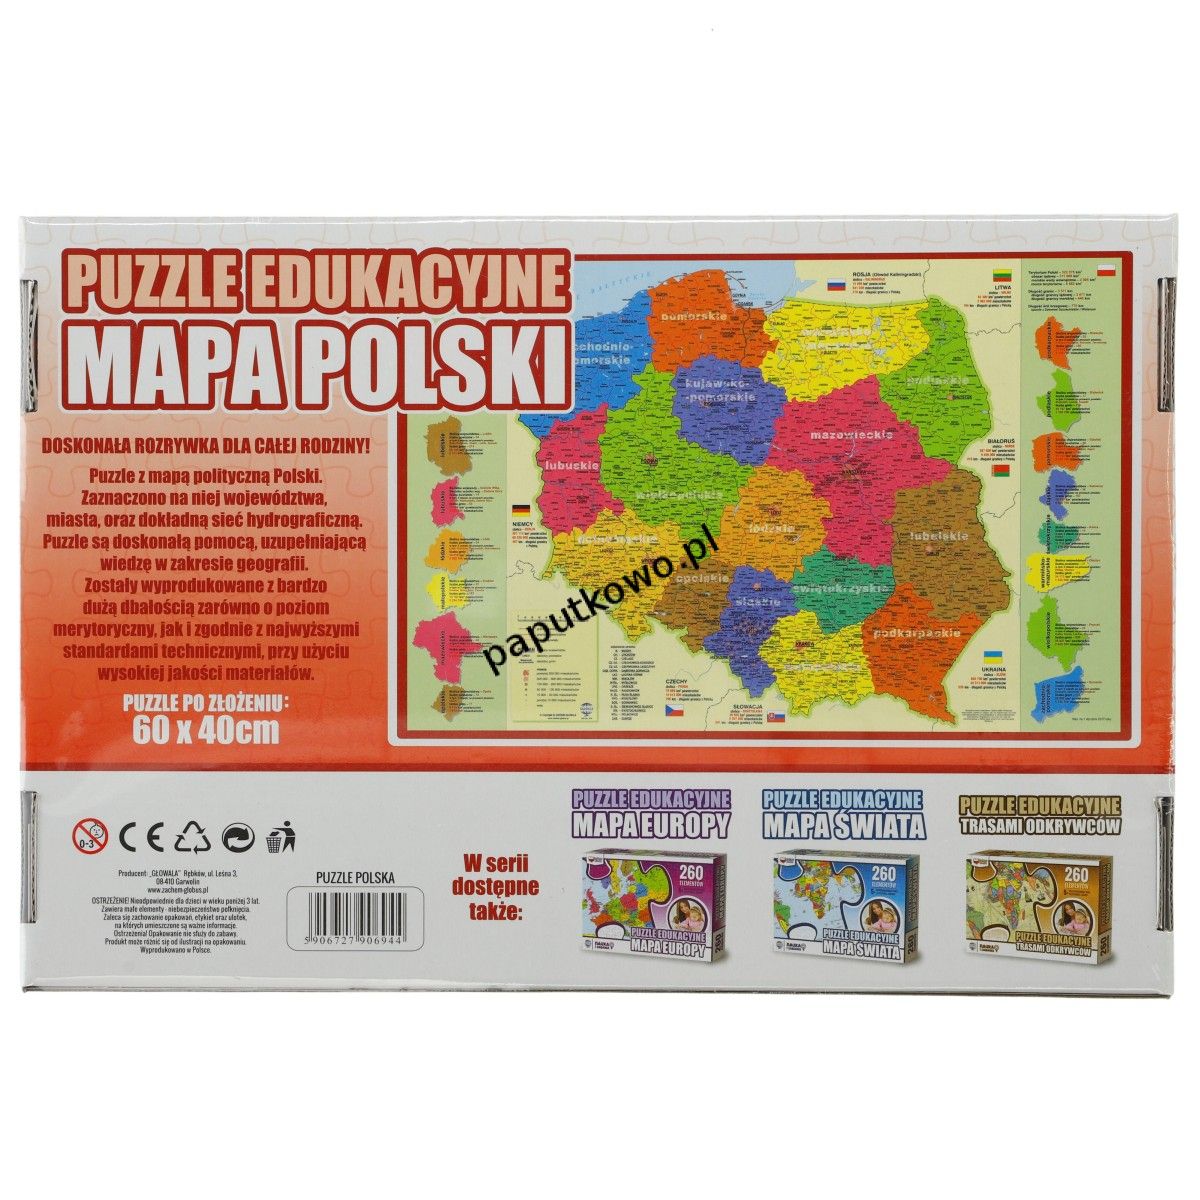 Puzzle Zachem edukacyjne mapa polski